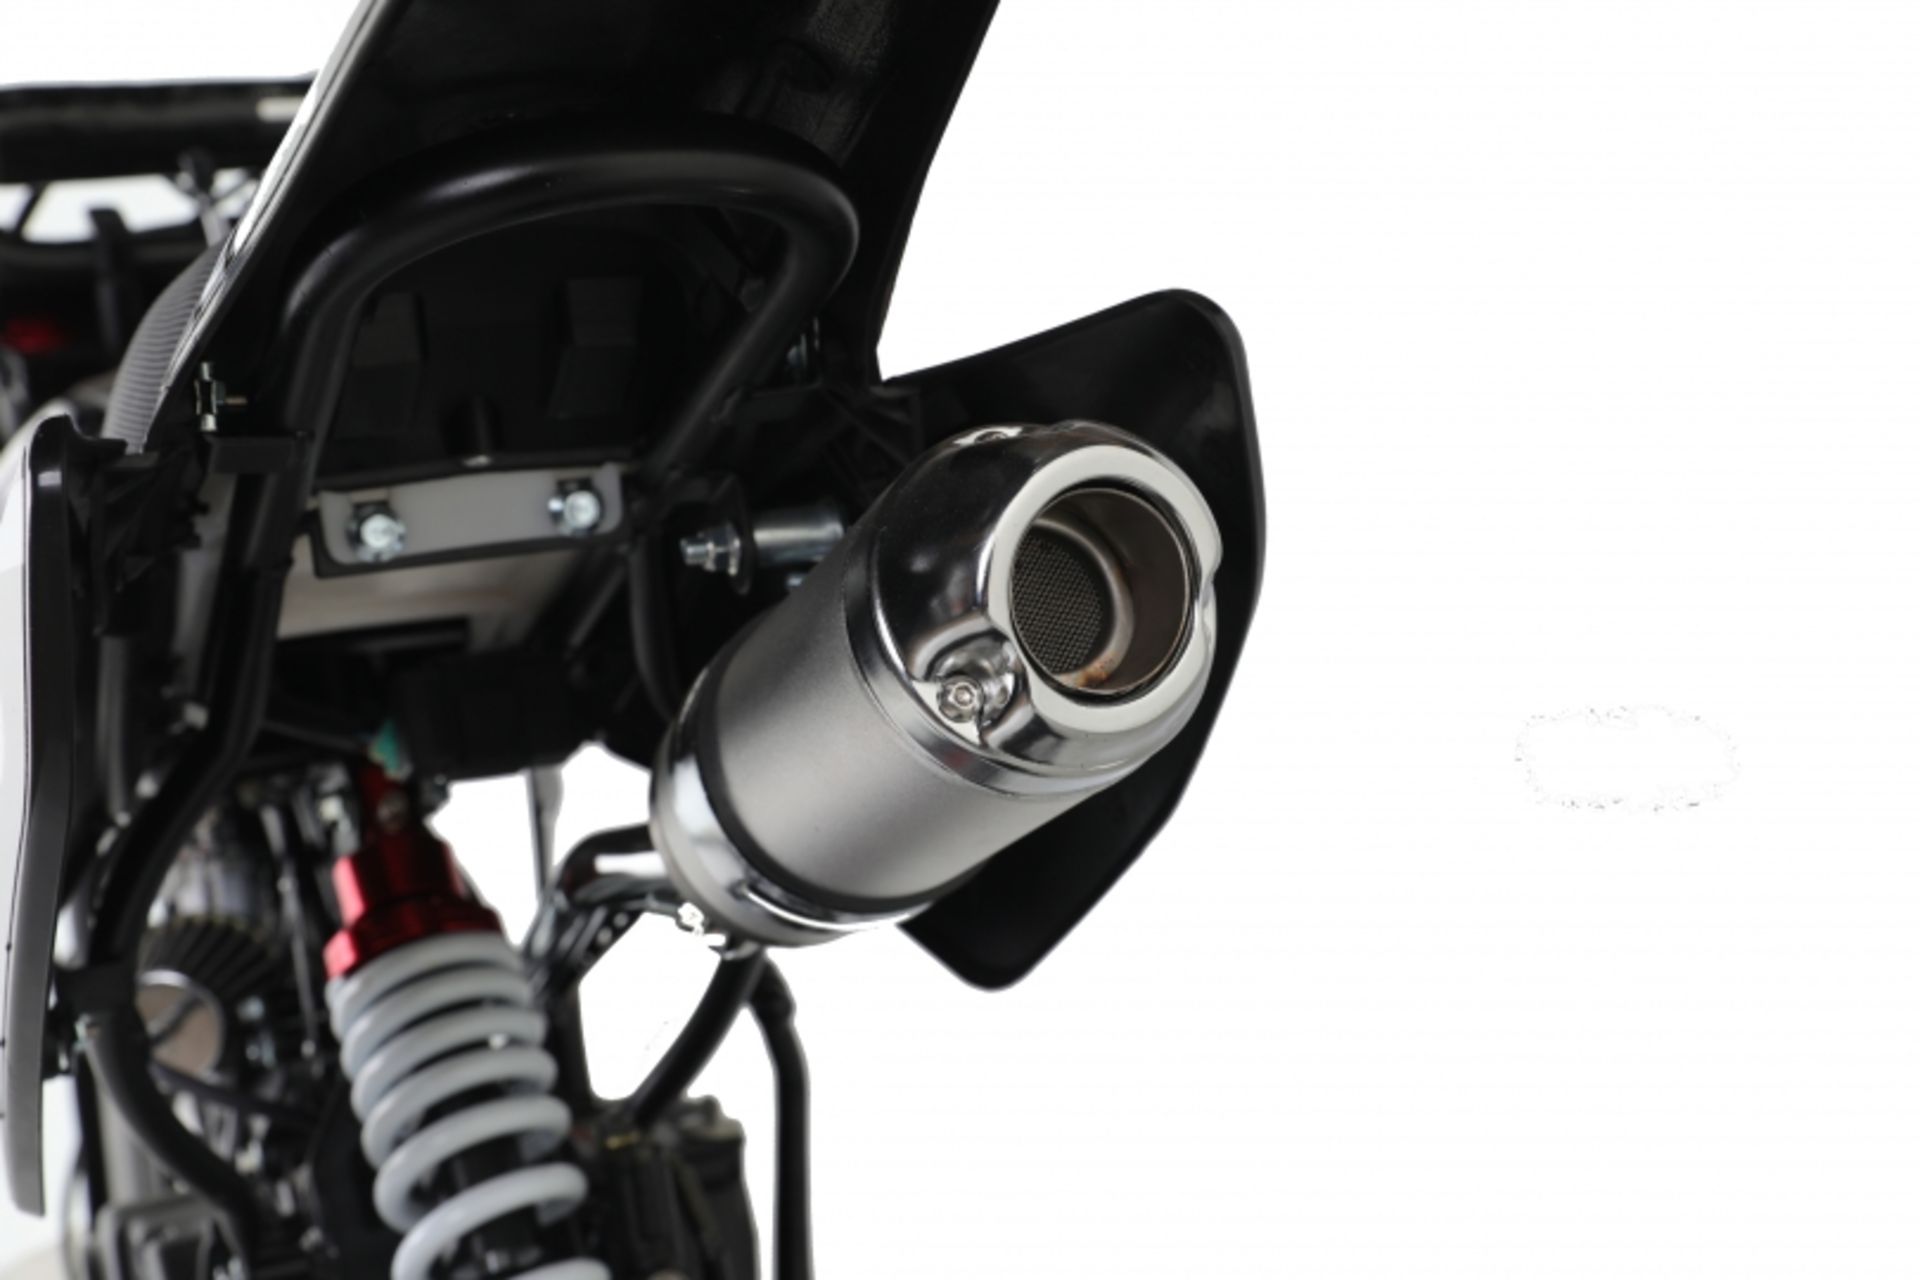 V Brand New 125cc USA Motocross Dirt Bike - Kick Start - Air Cooled - 4 Stroke - Full Suspension - - Image 3 of 5